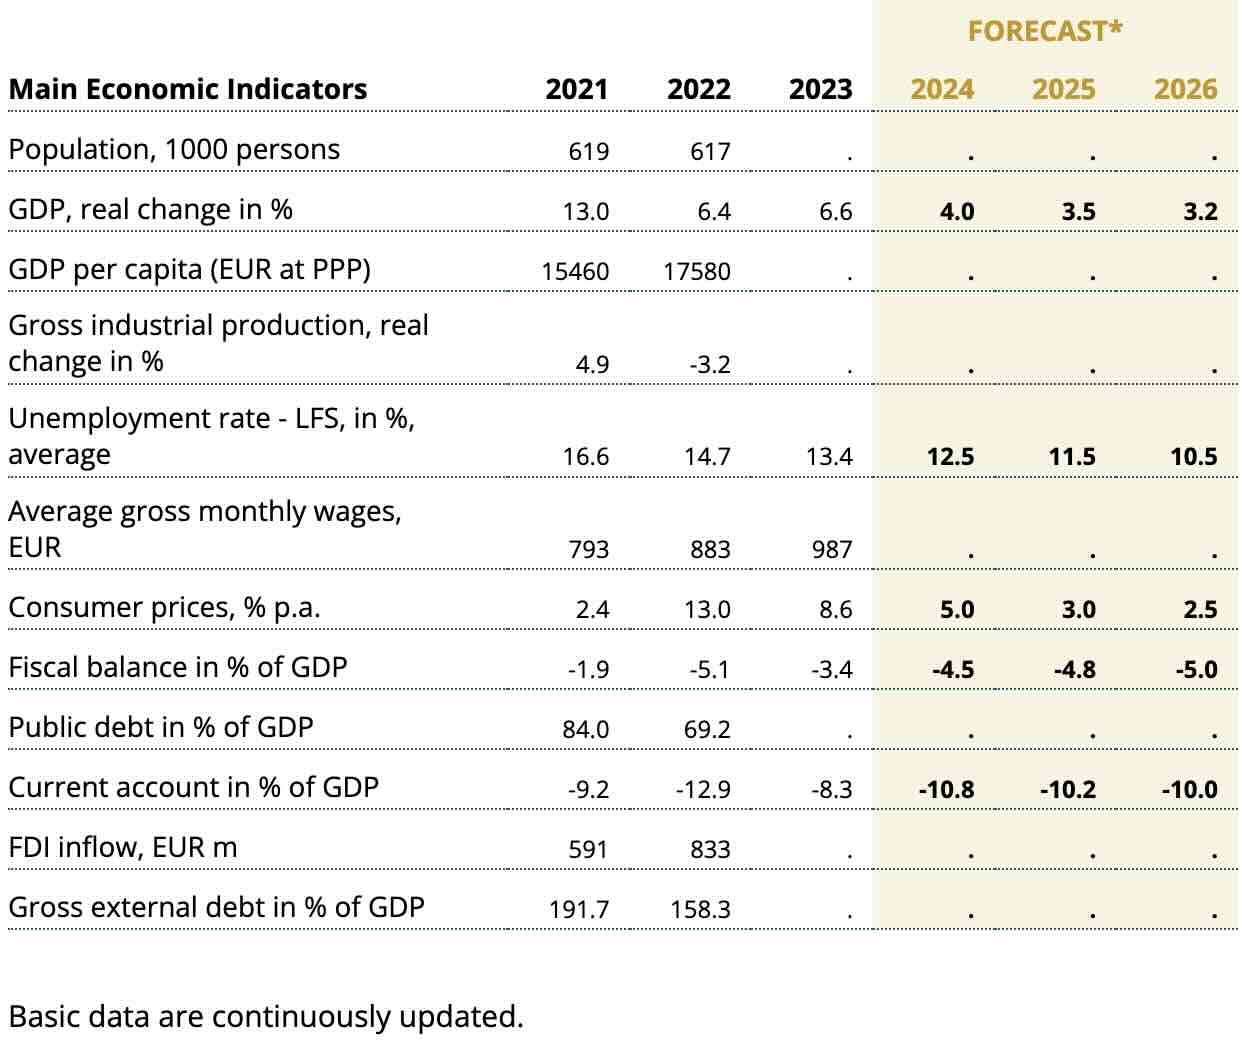 prévision de croissance monténégro pour 2024, 2025 et 2026